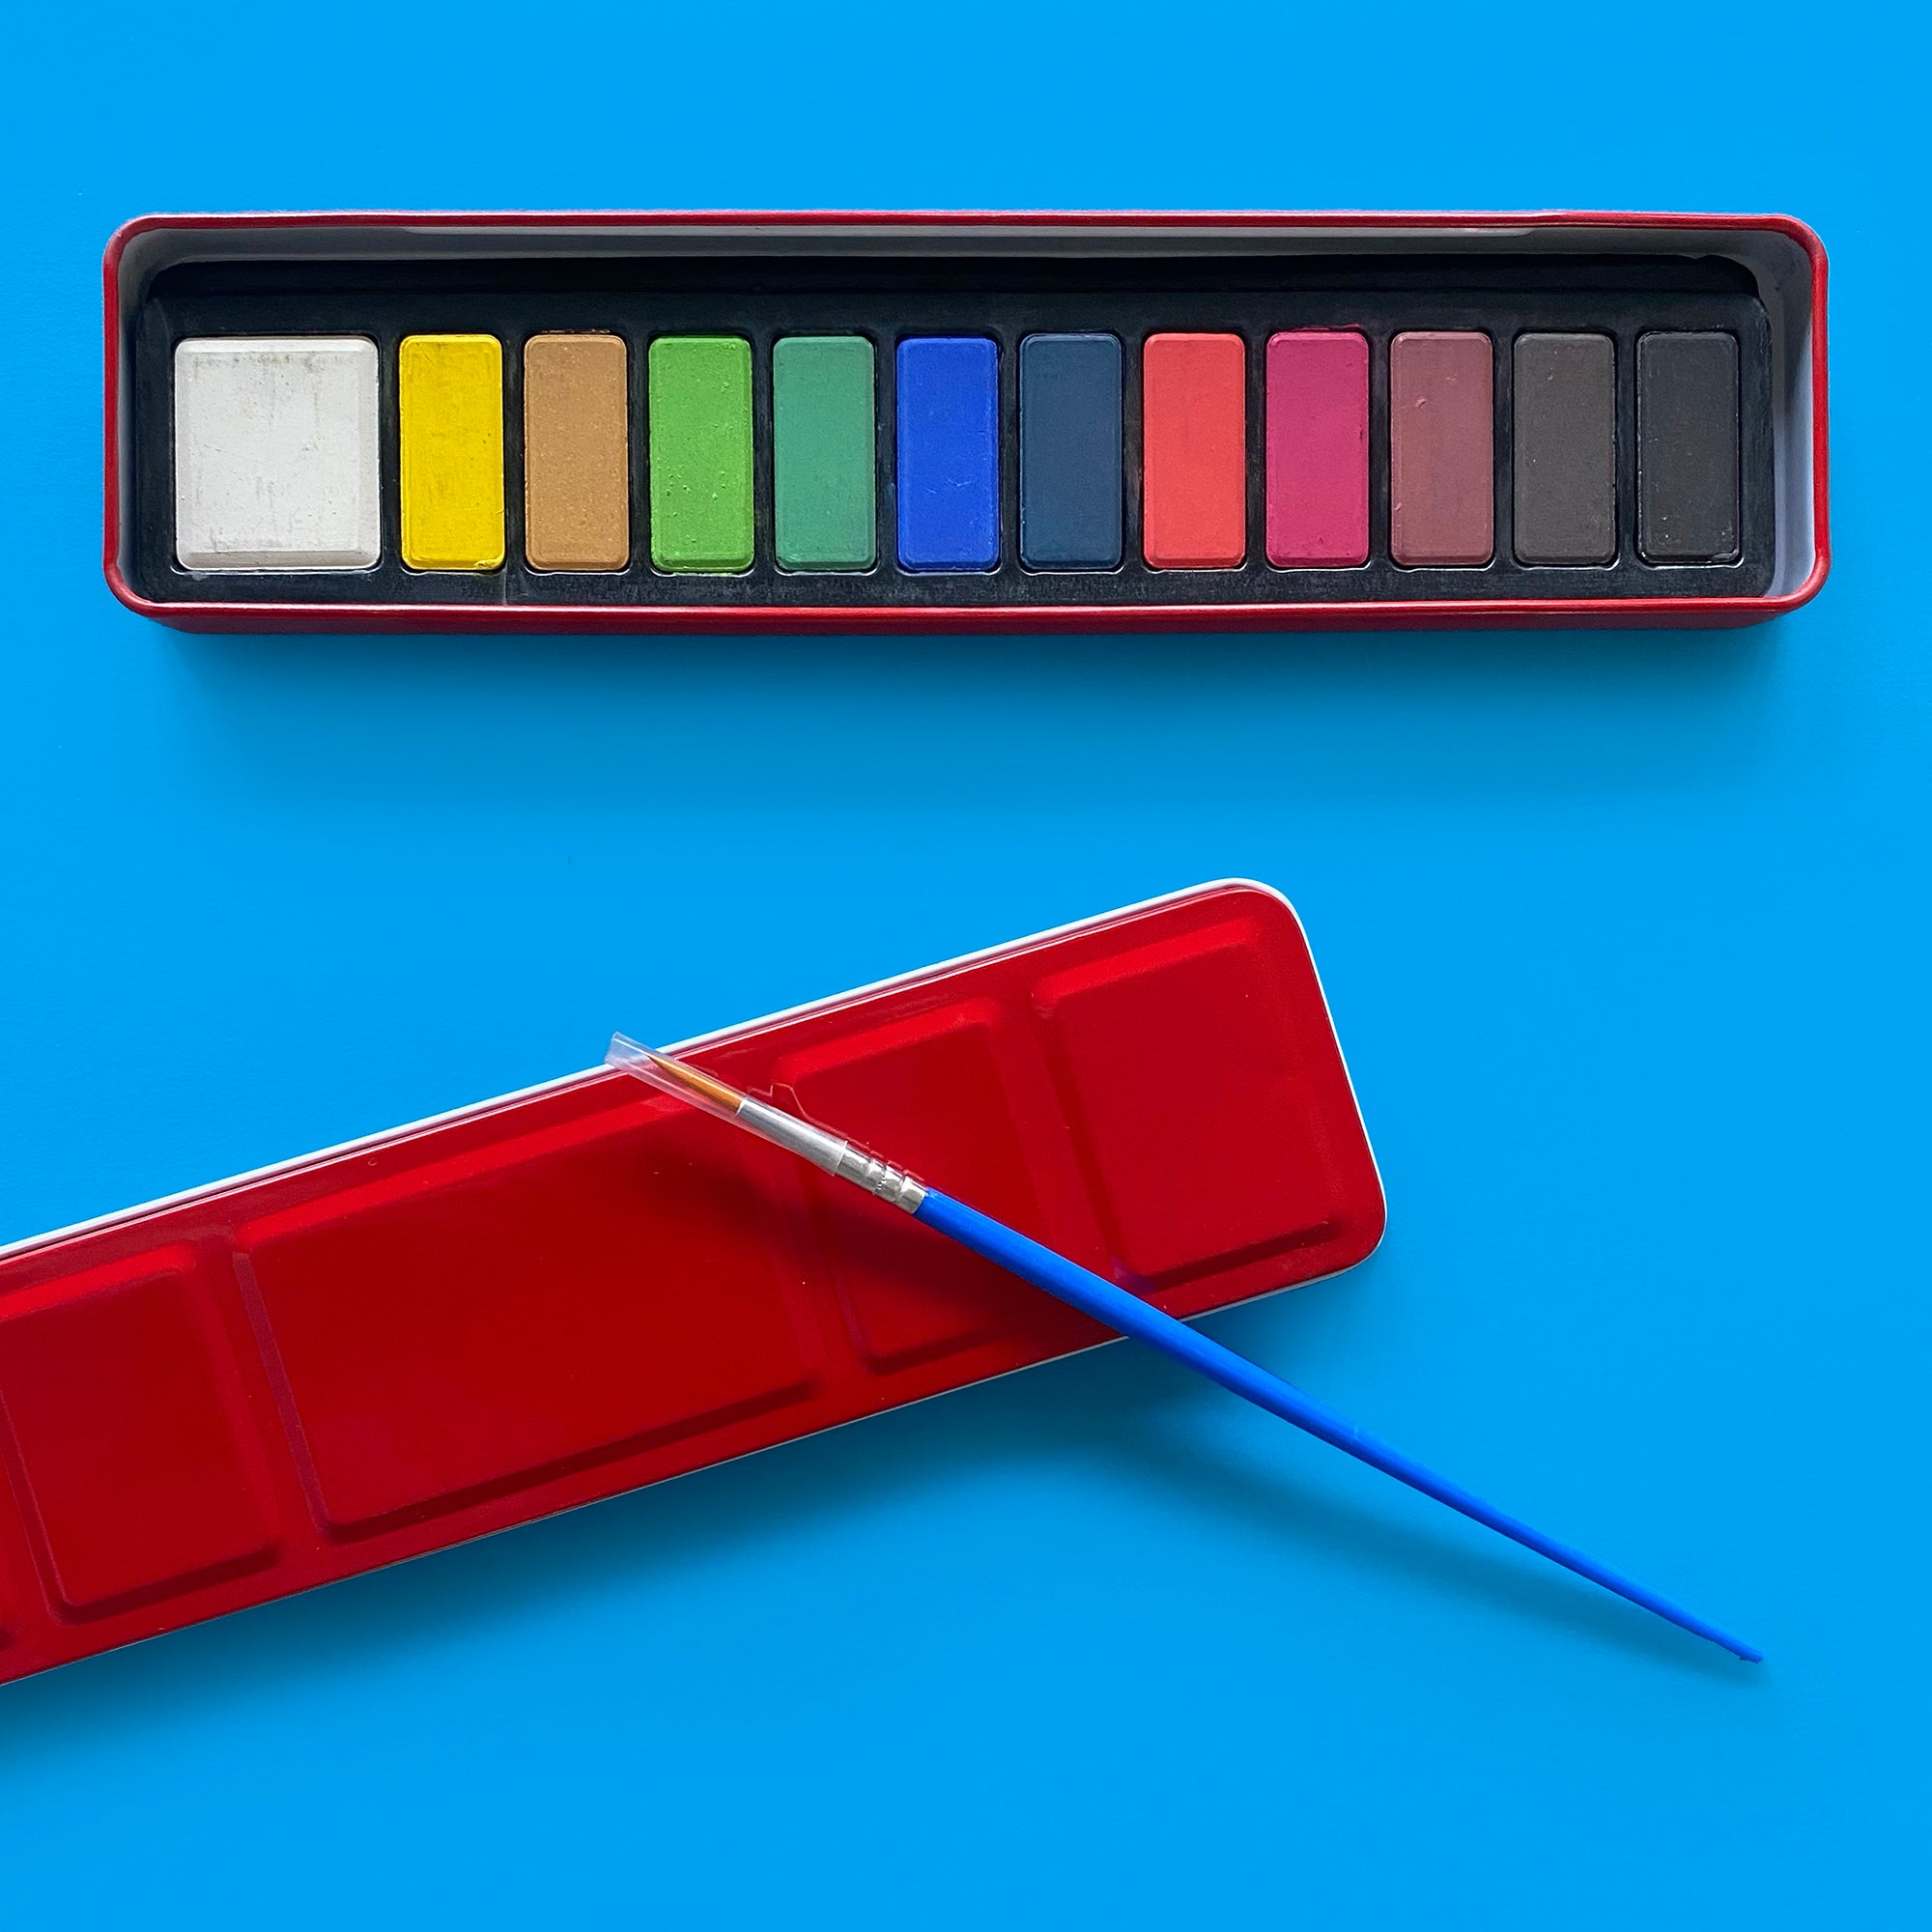 BASICS - 12 Colour Watercolour Paint Set in Metal Case